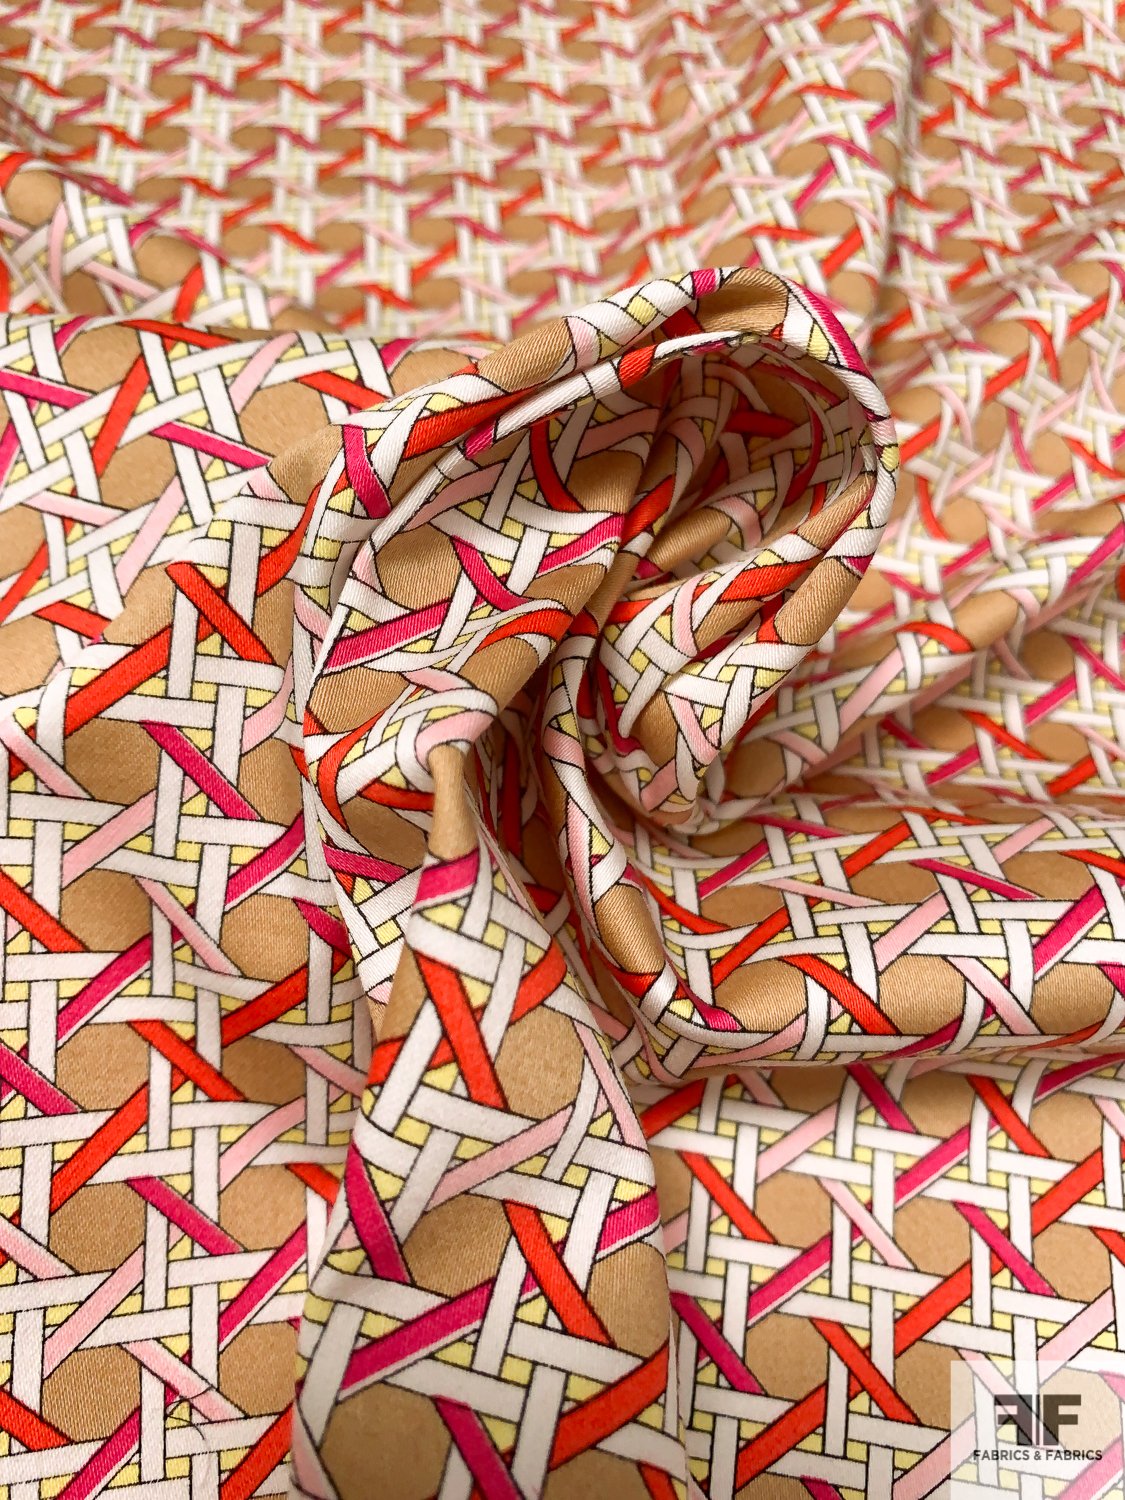 Interlocking Basketweave-Like Printed Stretch Cotton Sateen - Tan / White / Magenta / Red